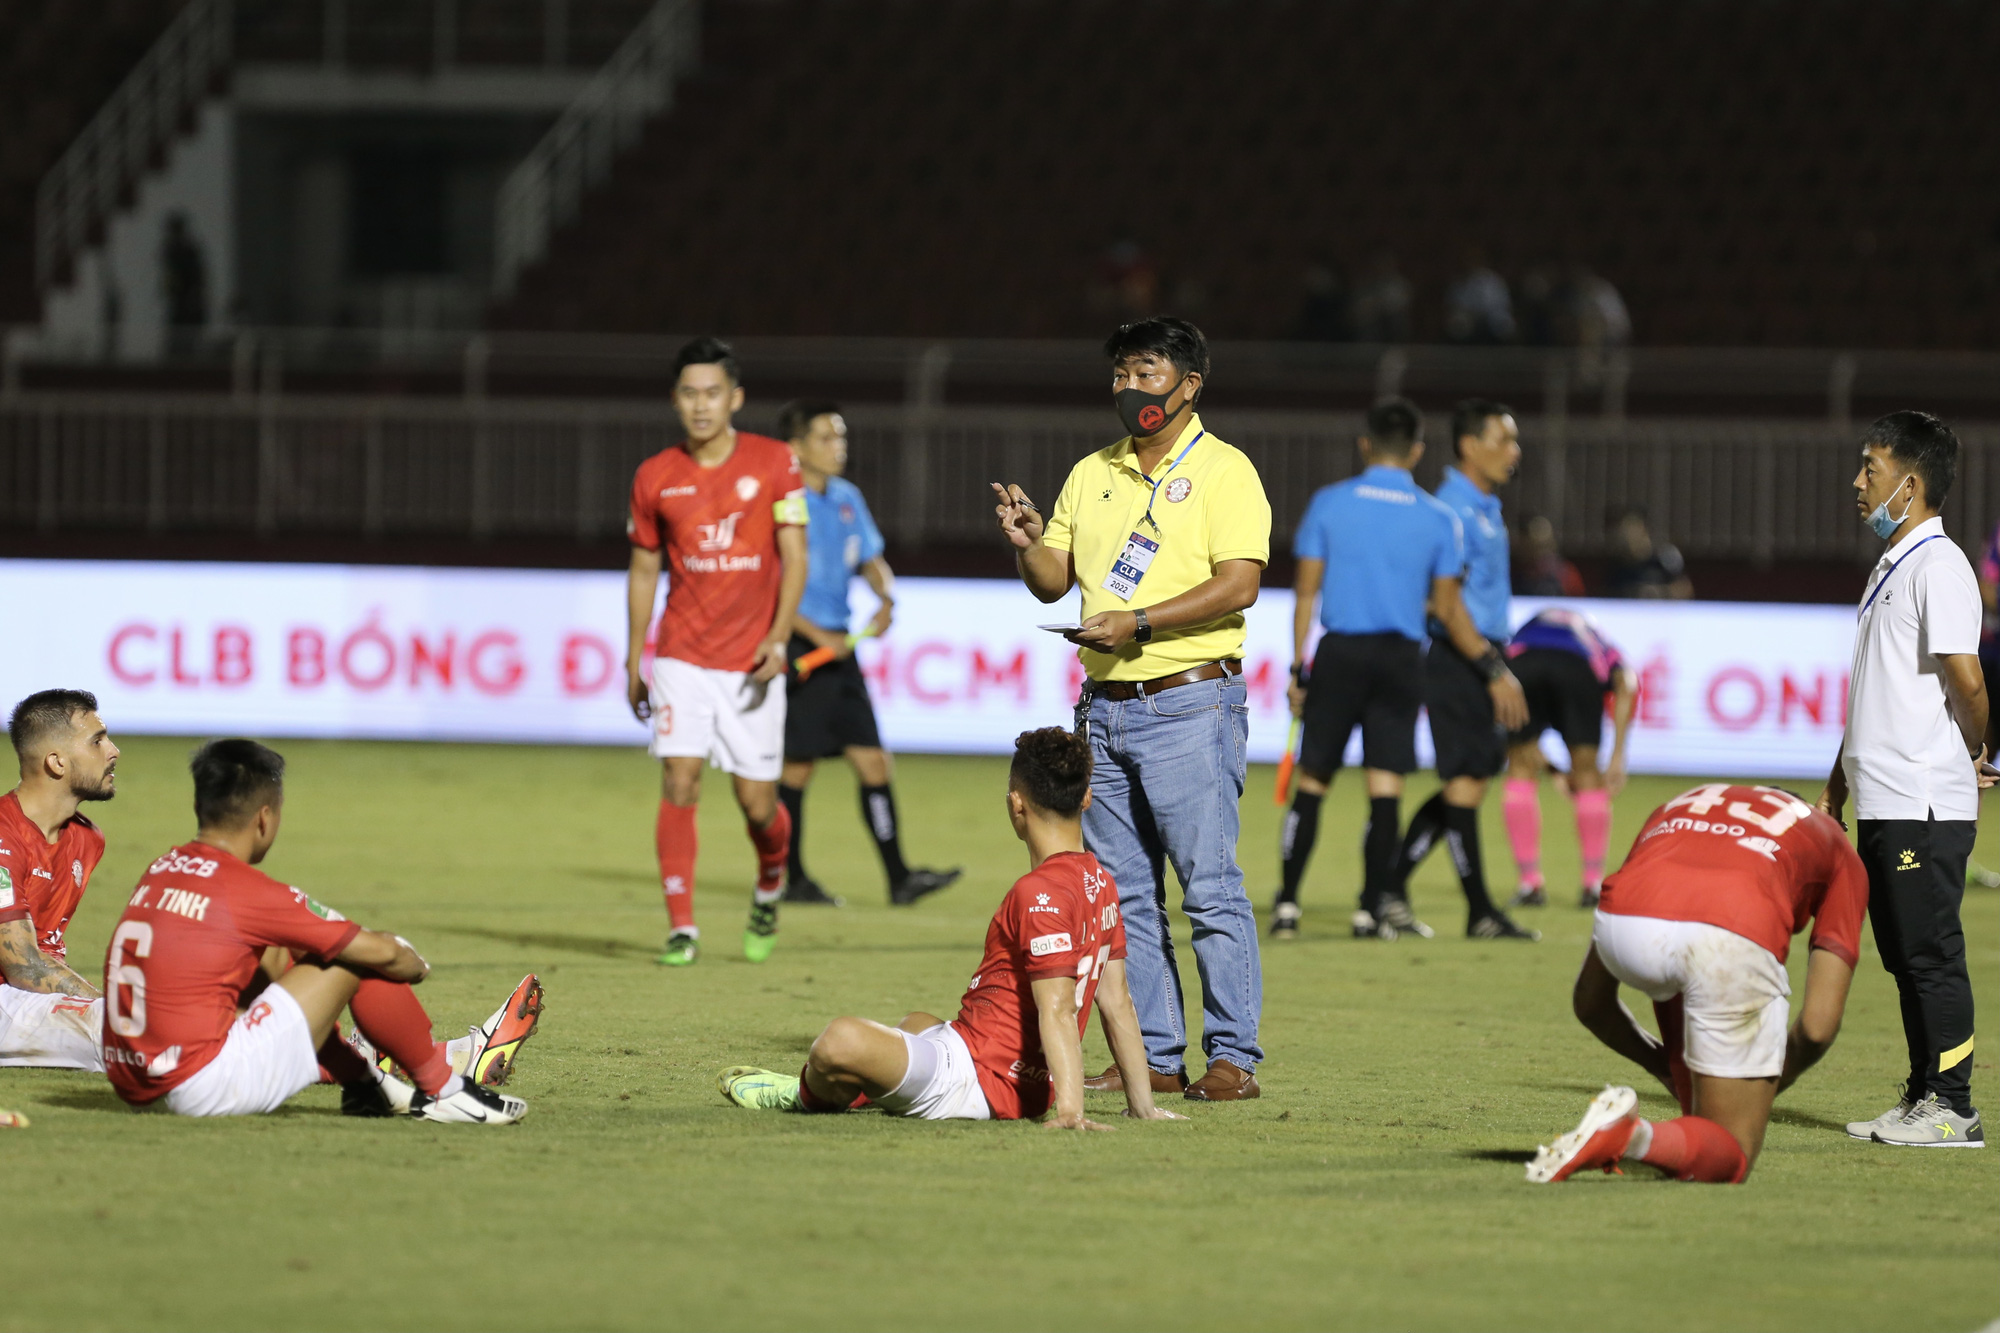 Cầu thủ Sài Gòn FC hạnh phúc vỡ oà khi lọt vào tứ kết Cúp Quốc gia - Ảnh 1.